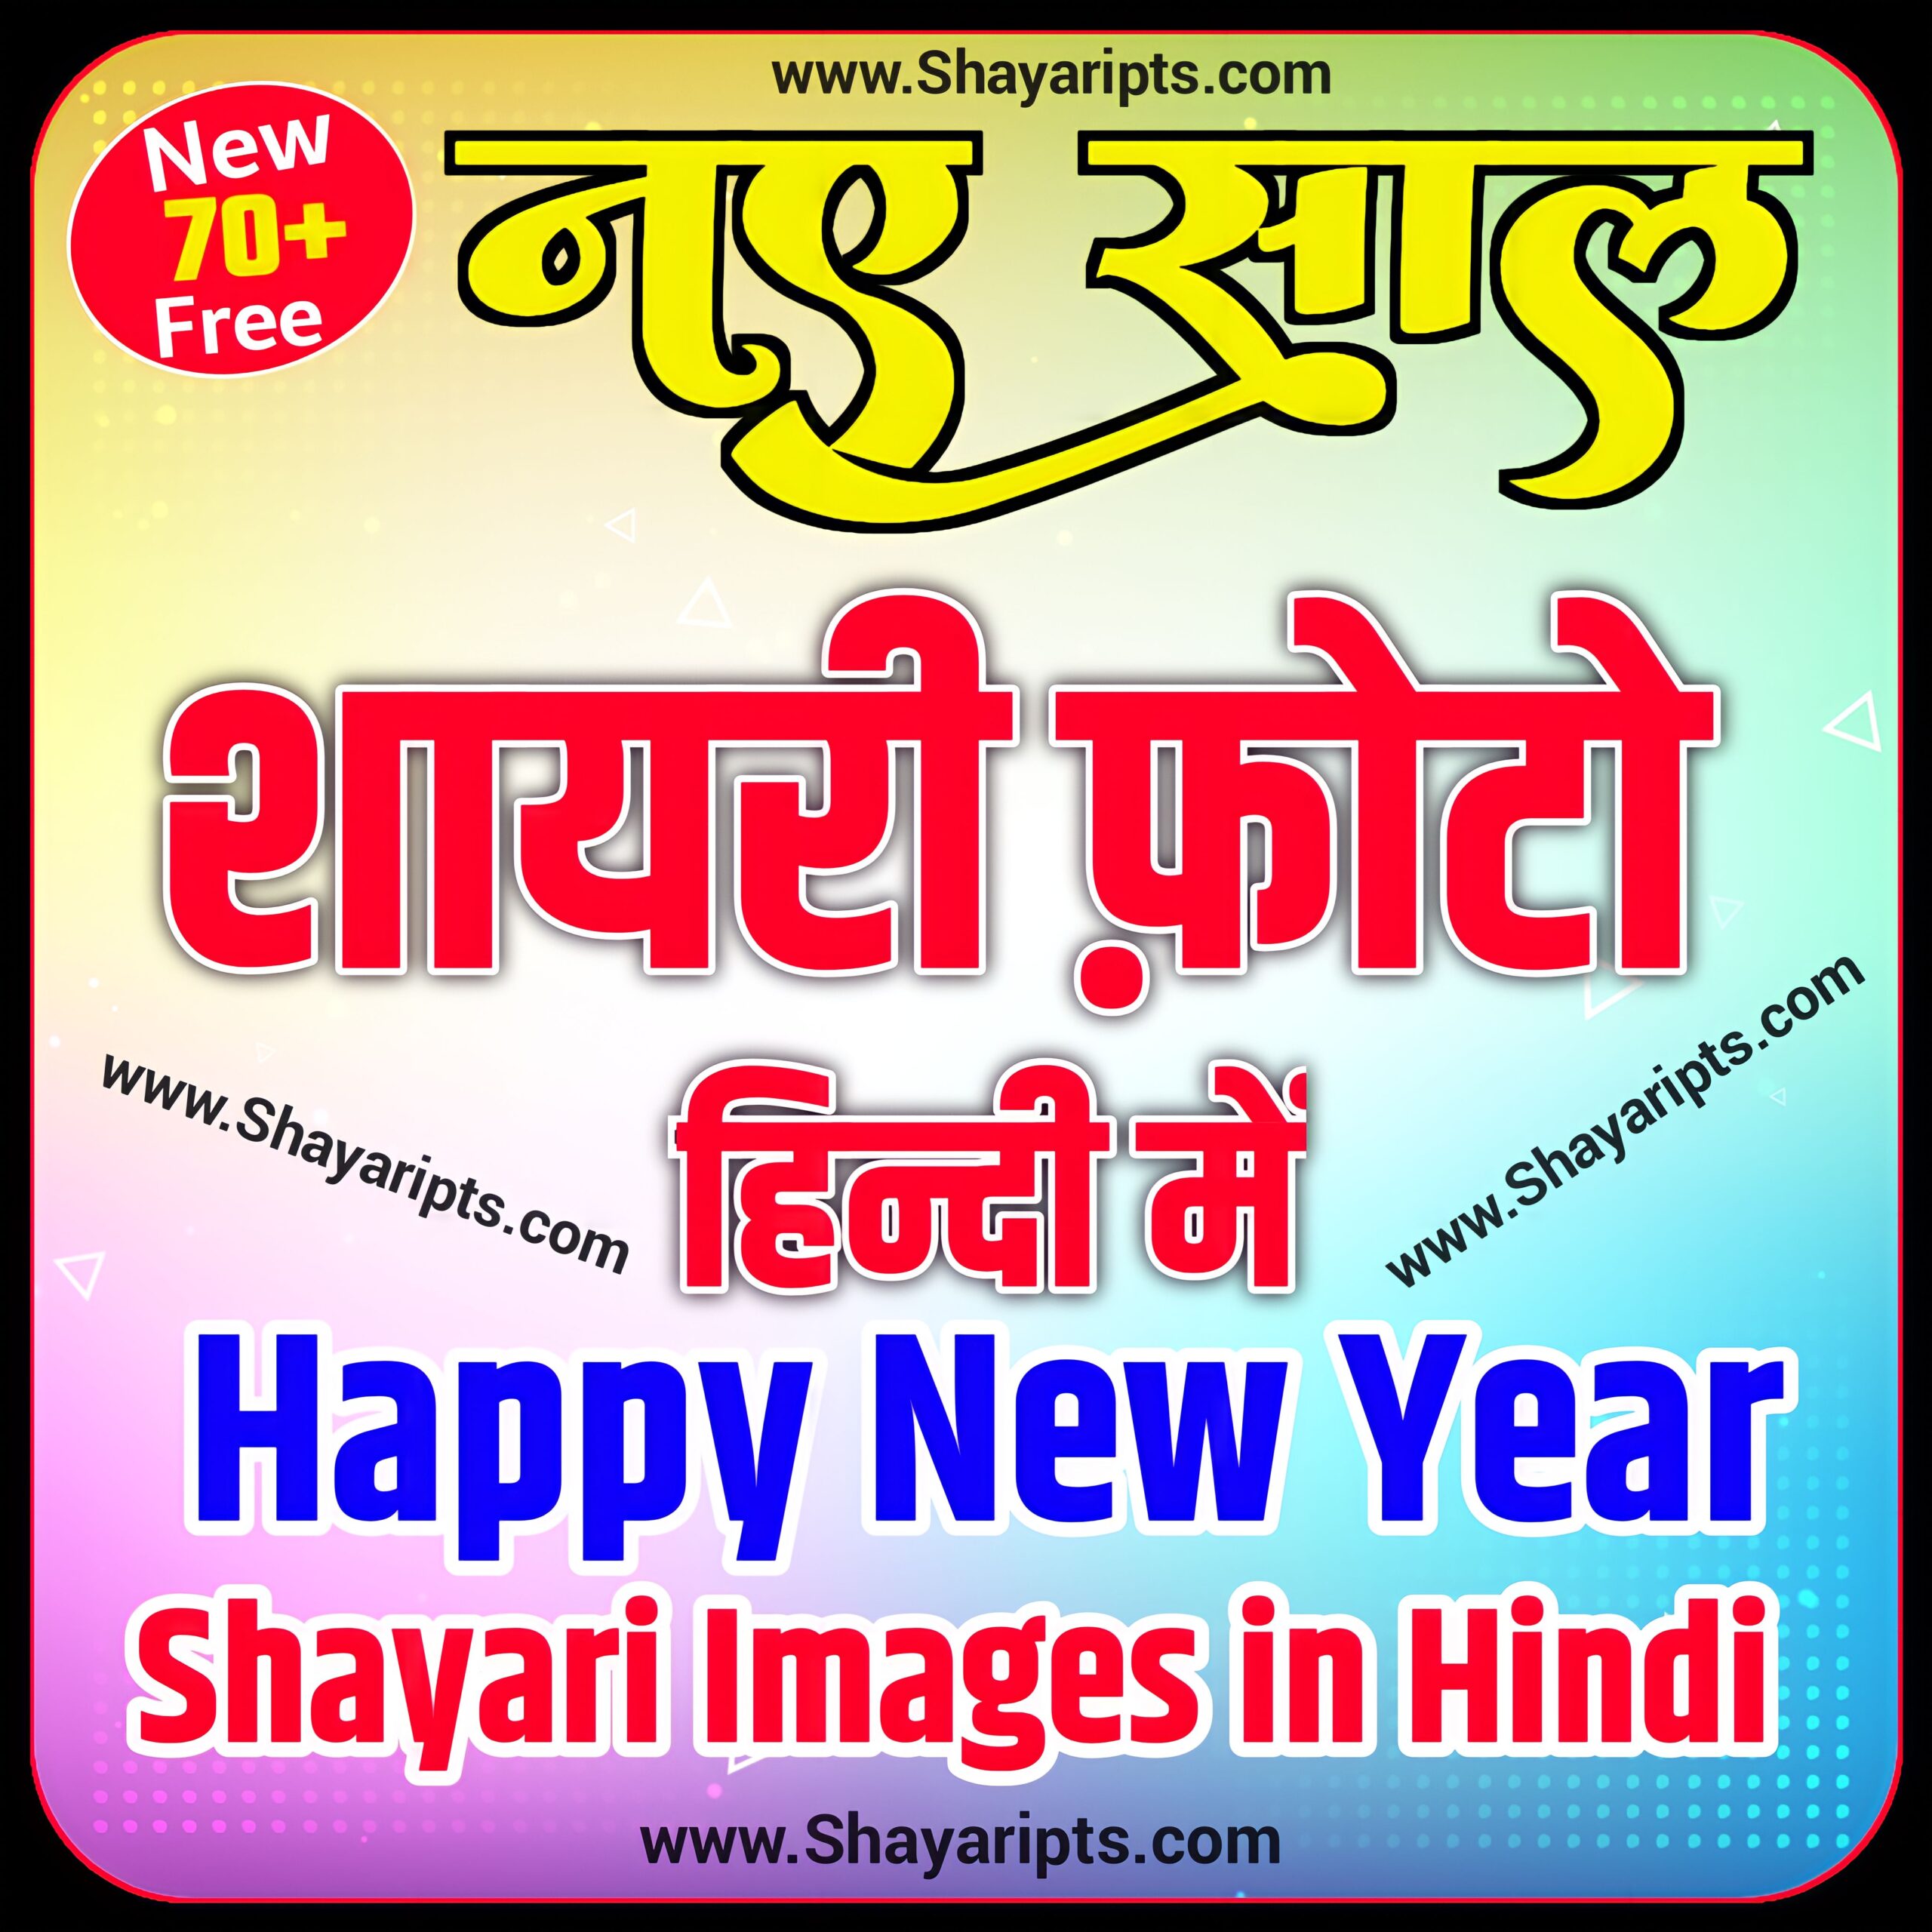 Happy New year shayari images In Hindi| Naya Saal ki Shayari images| New year status in hindi| happy new year shayari photo in hindi